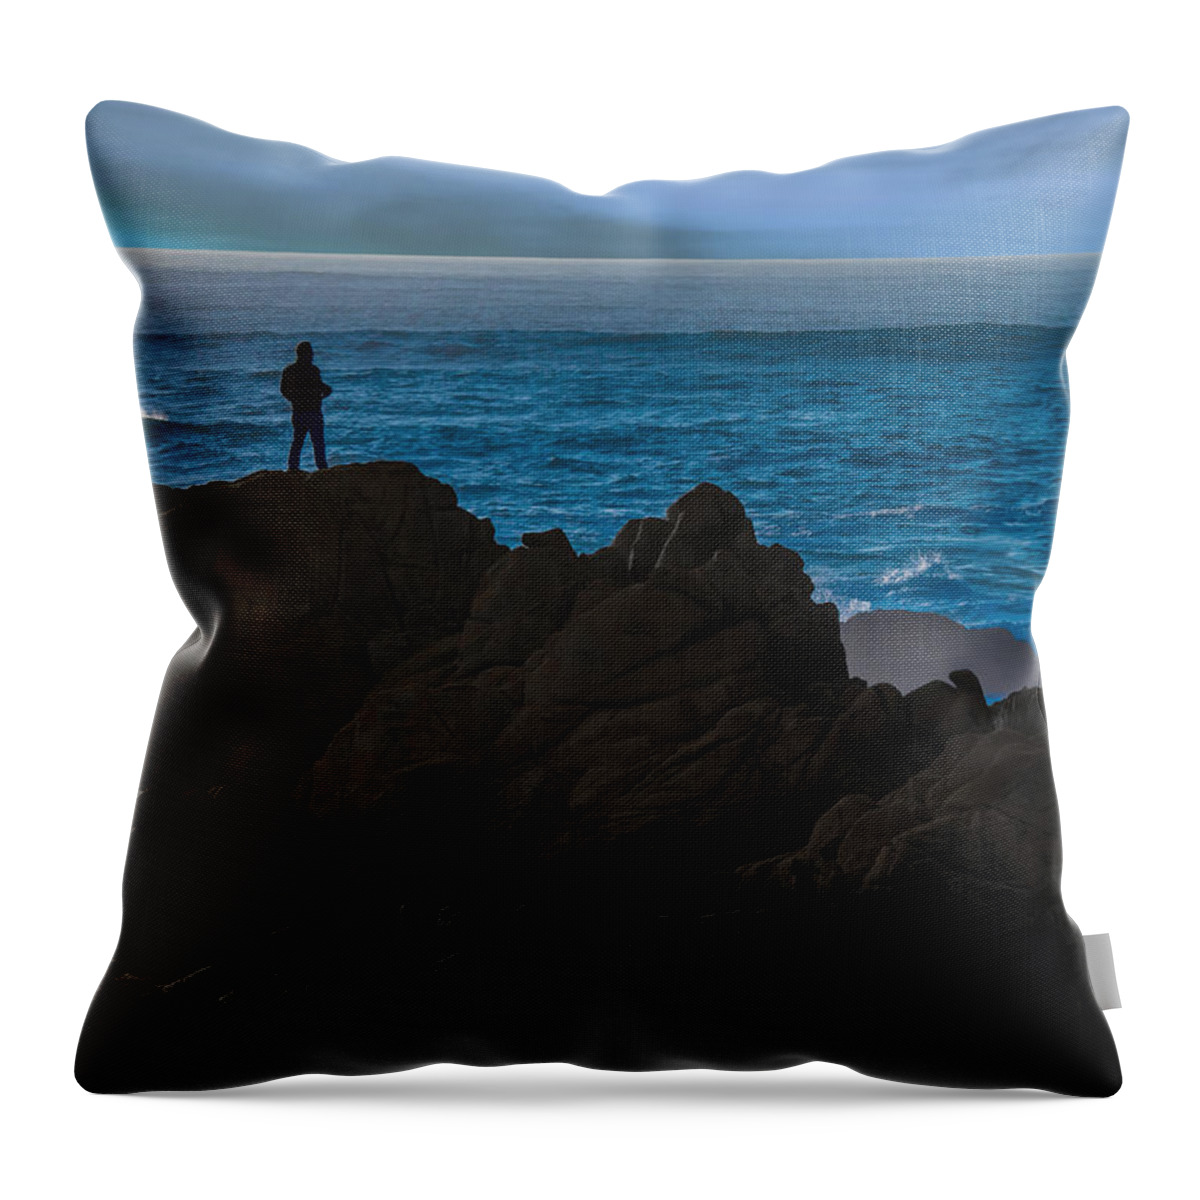 Ocean Throw Pillow featuring the photograph The Watcher by Derek Dean